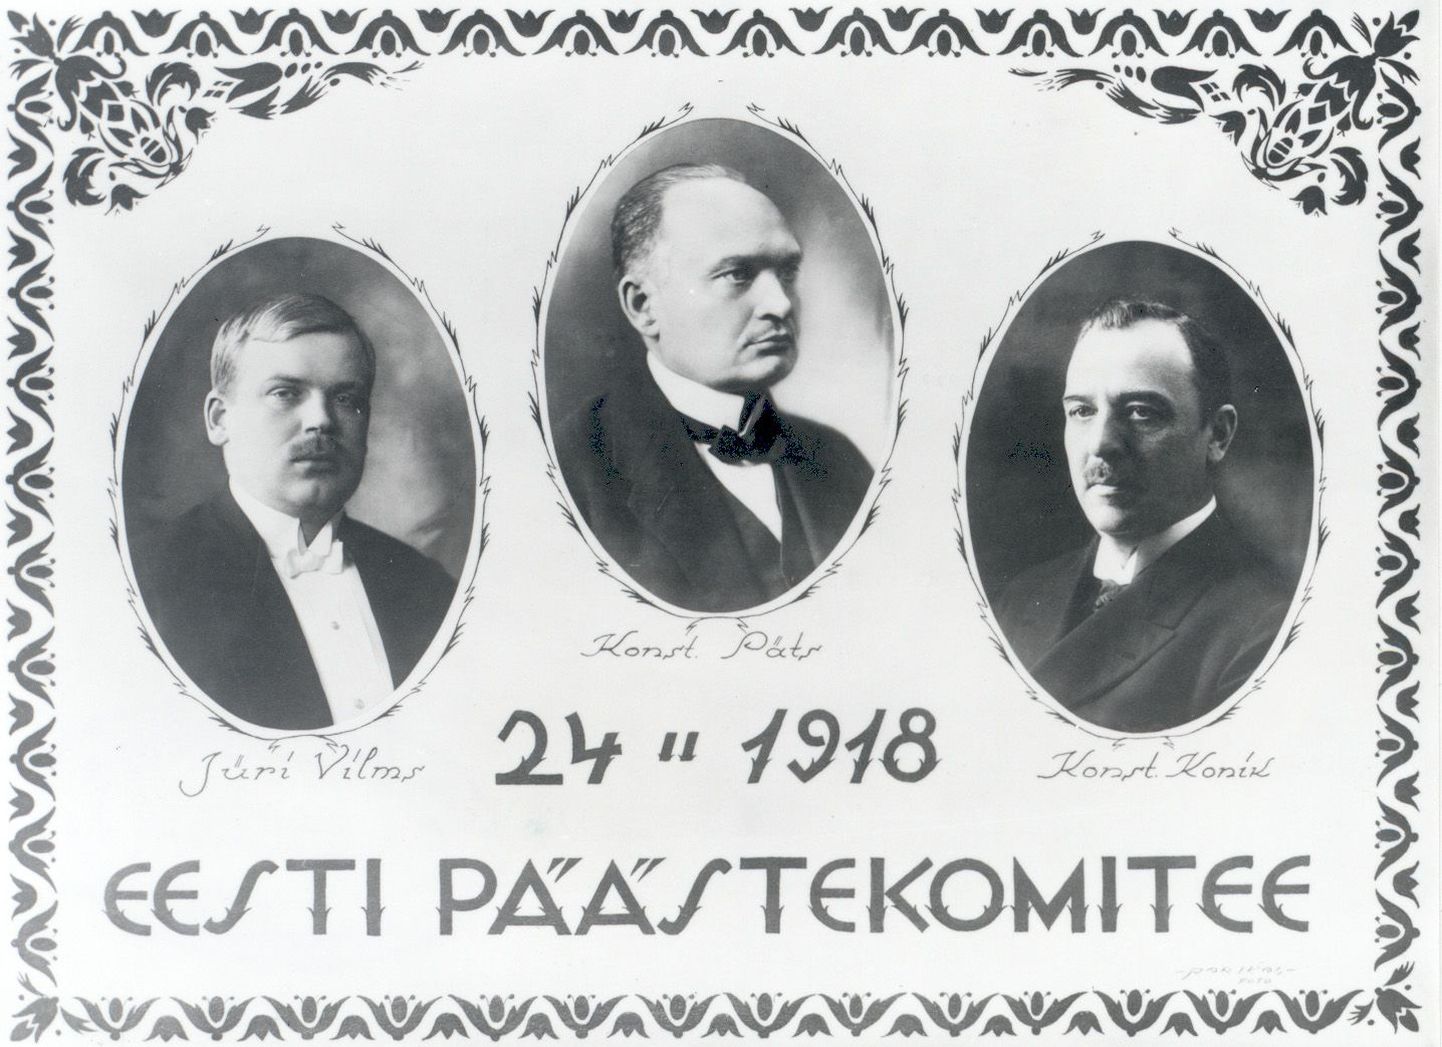 Rakveres rahvakoosolekul esinenud Jüri Vilmsist (vasakul) sai peagi üks Eesti Päästekomitee liikmeid.